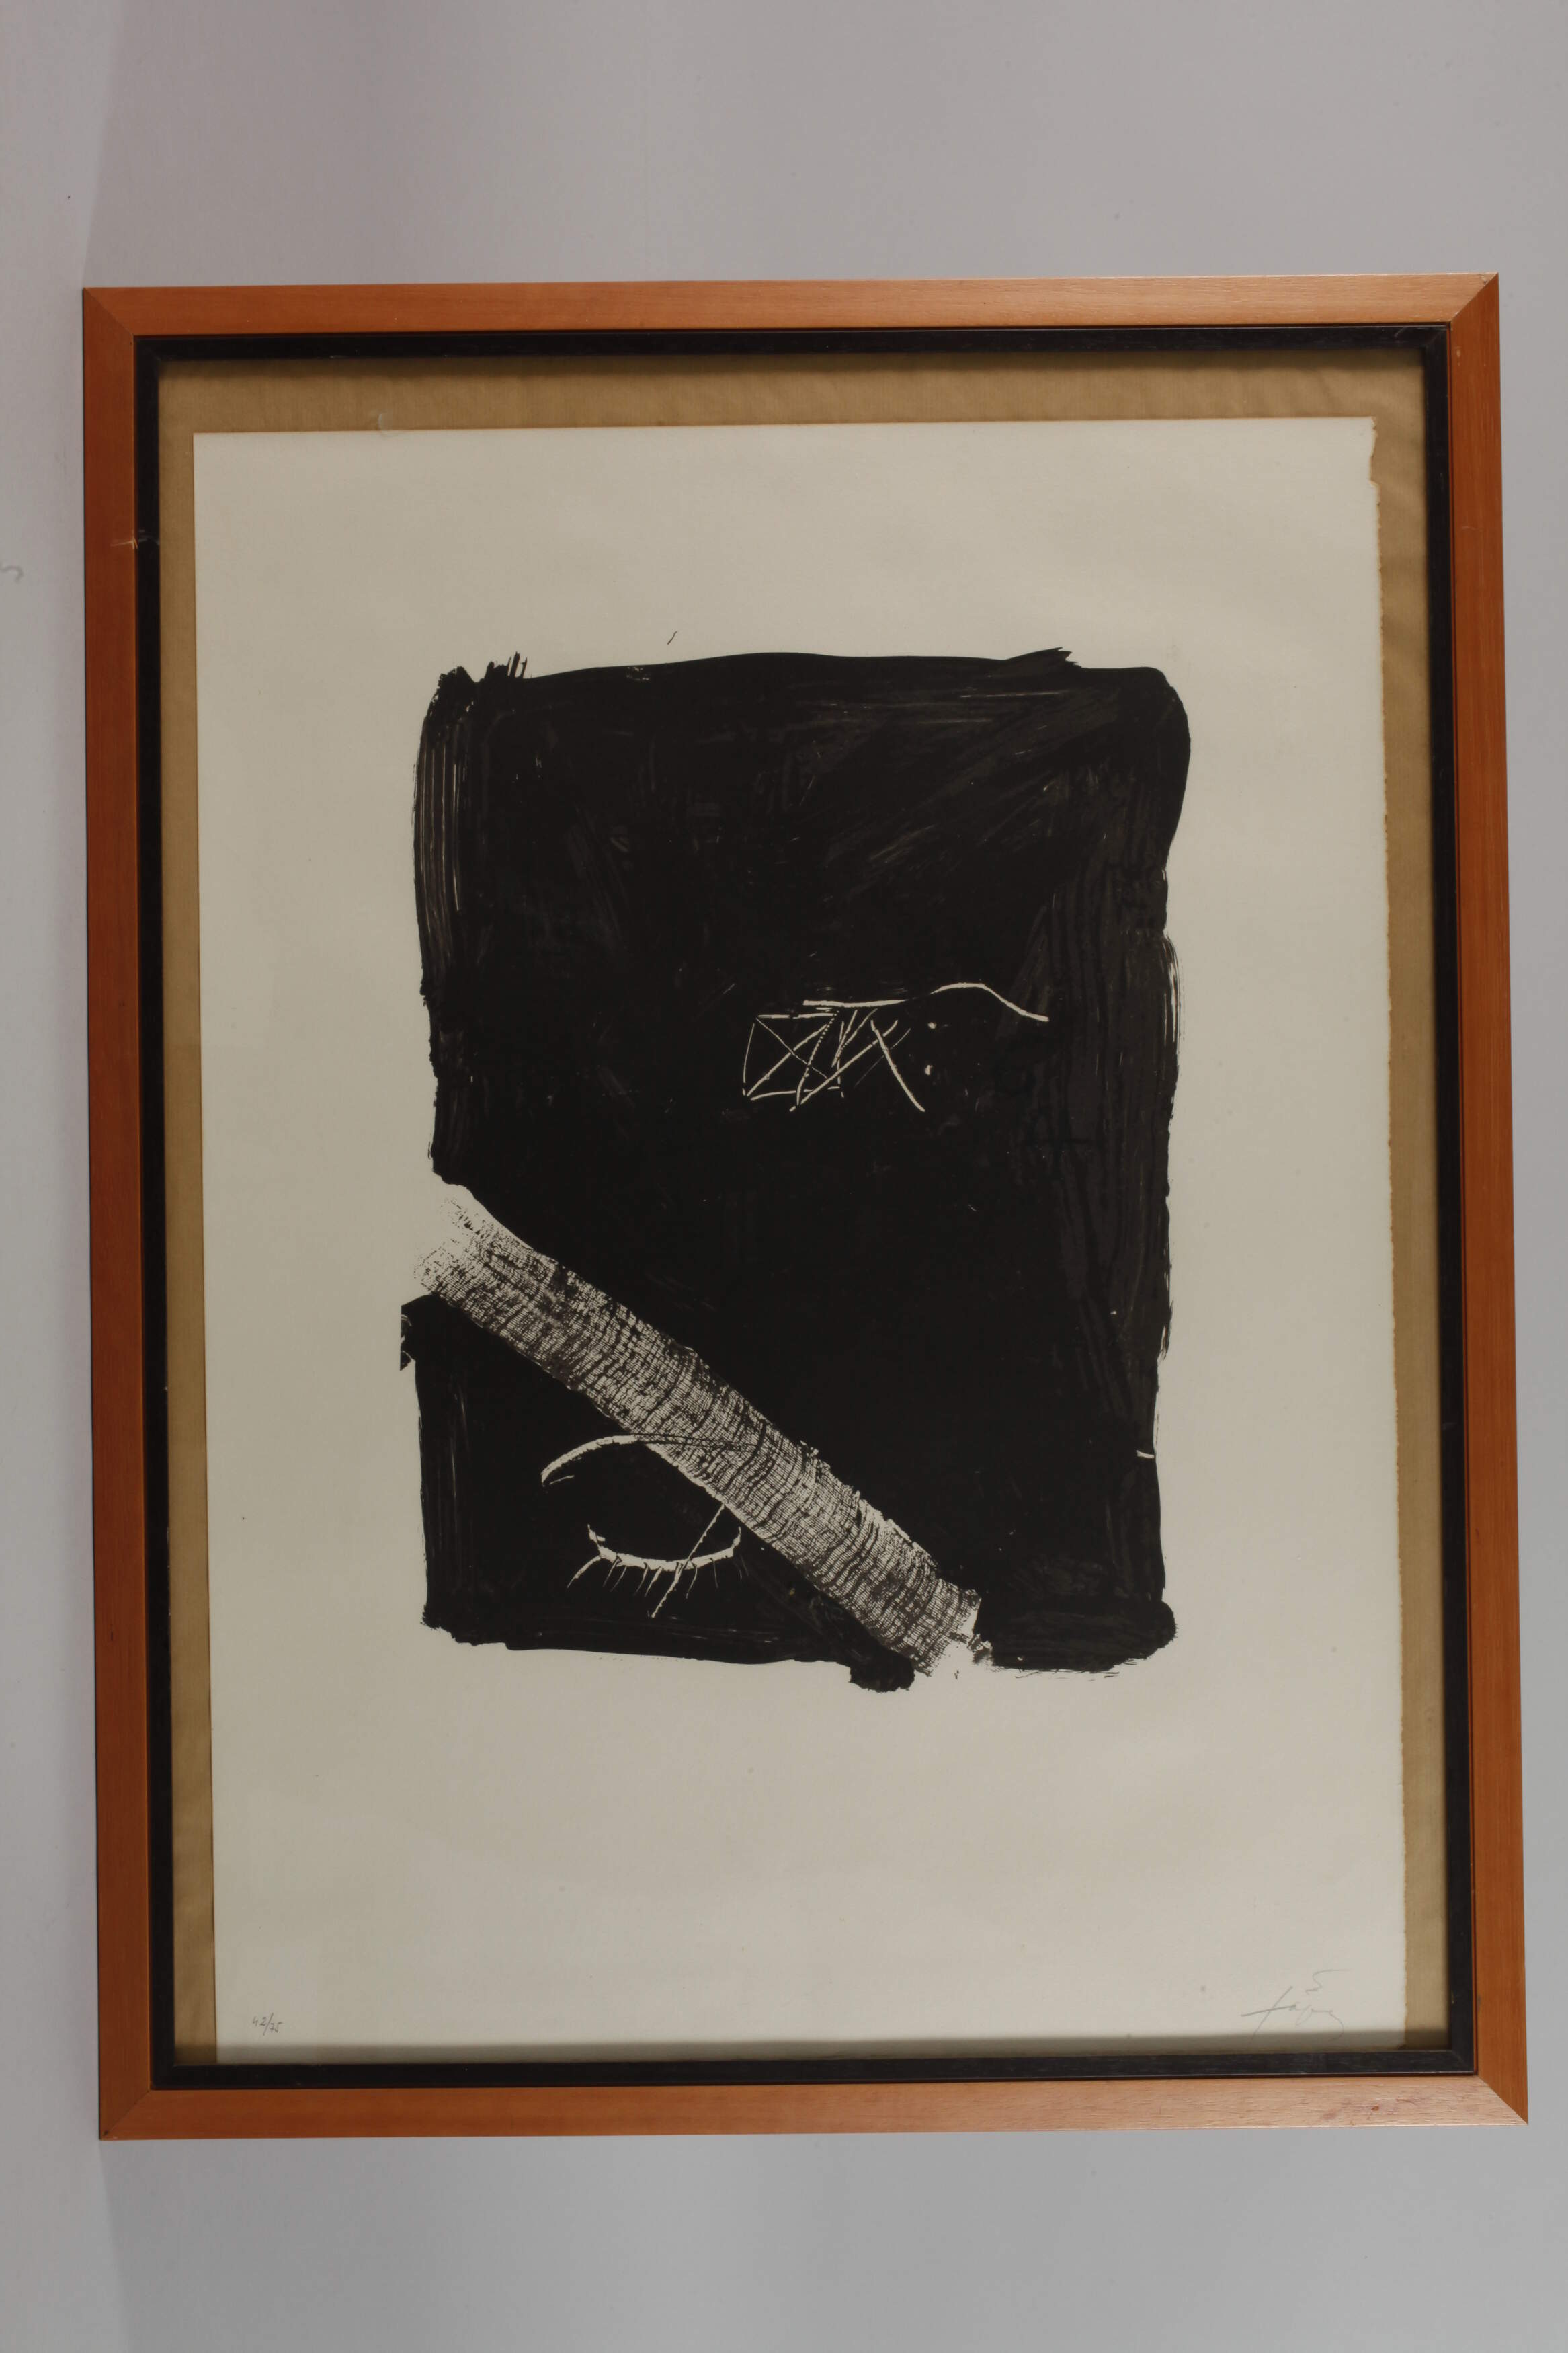 Antoni Tàpies, "Llambrec 5" - Image 2 of 3